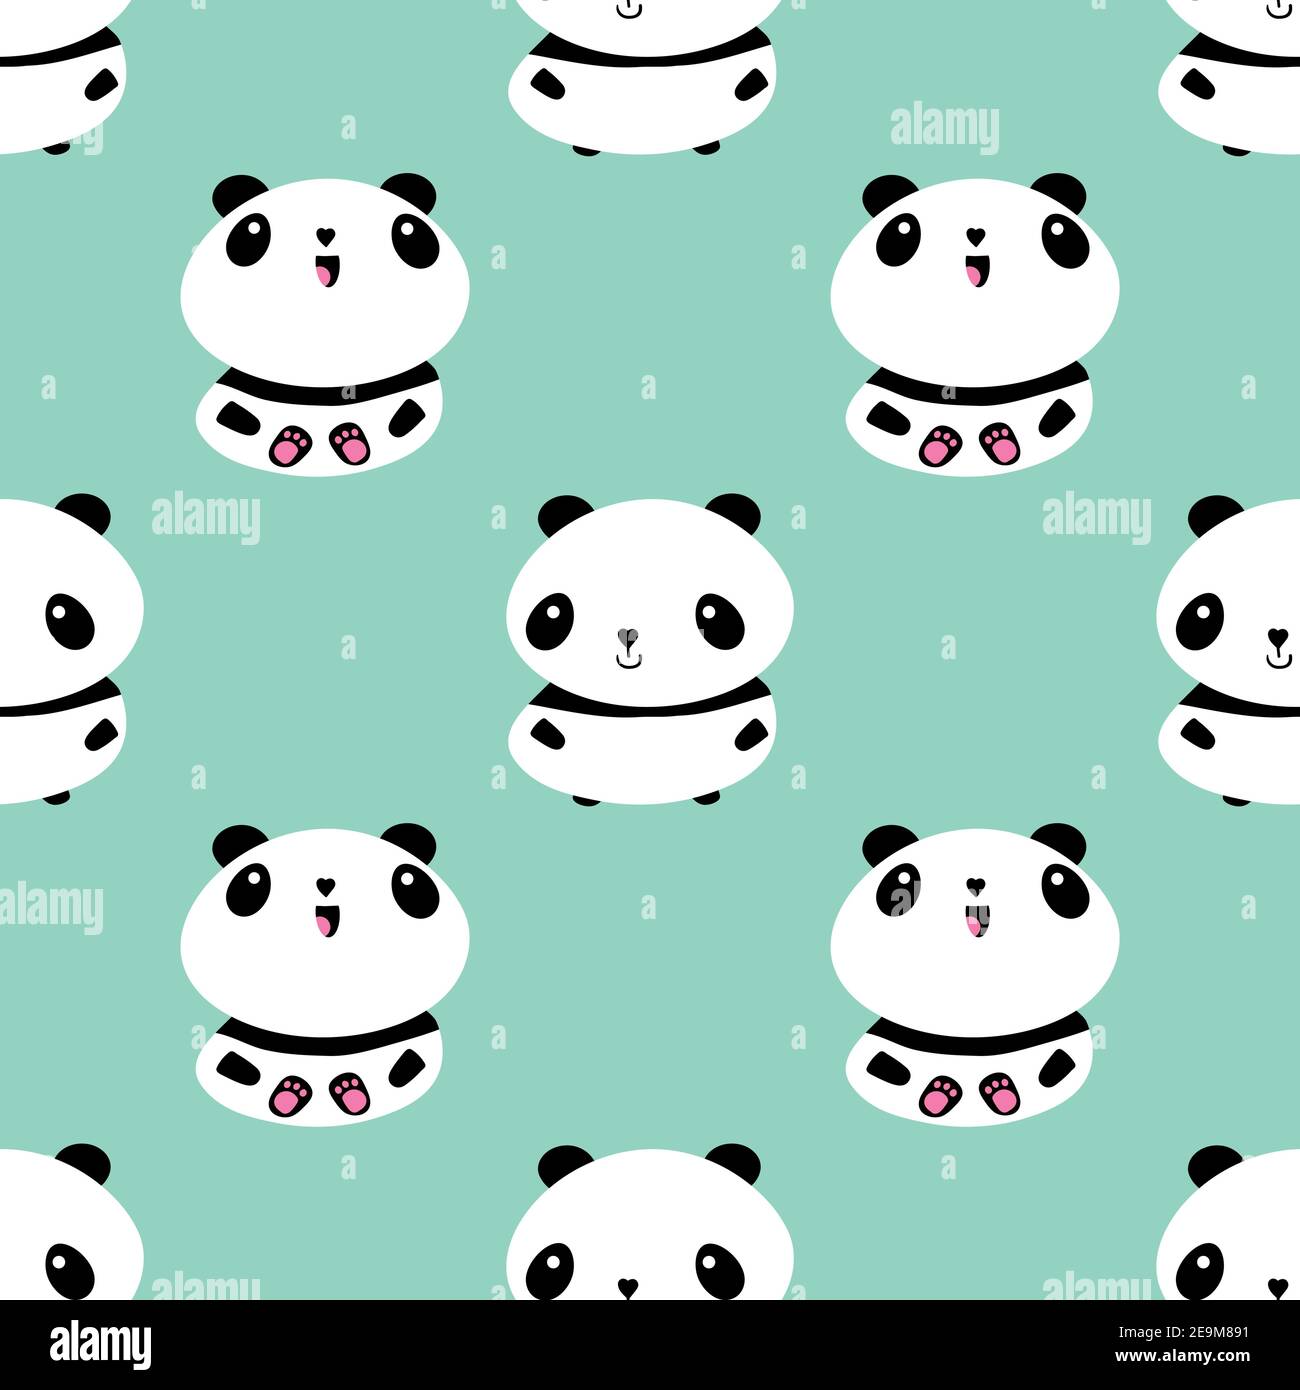 Kawaii vettore panda senza cuciture pattern background. Carino nero e bianco seduto cartoni animati su sfondo pastello teal. Illustrazione disegnata a mano Illustrazione Vettoriale